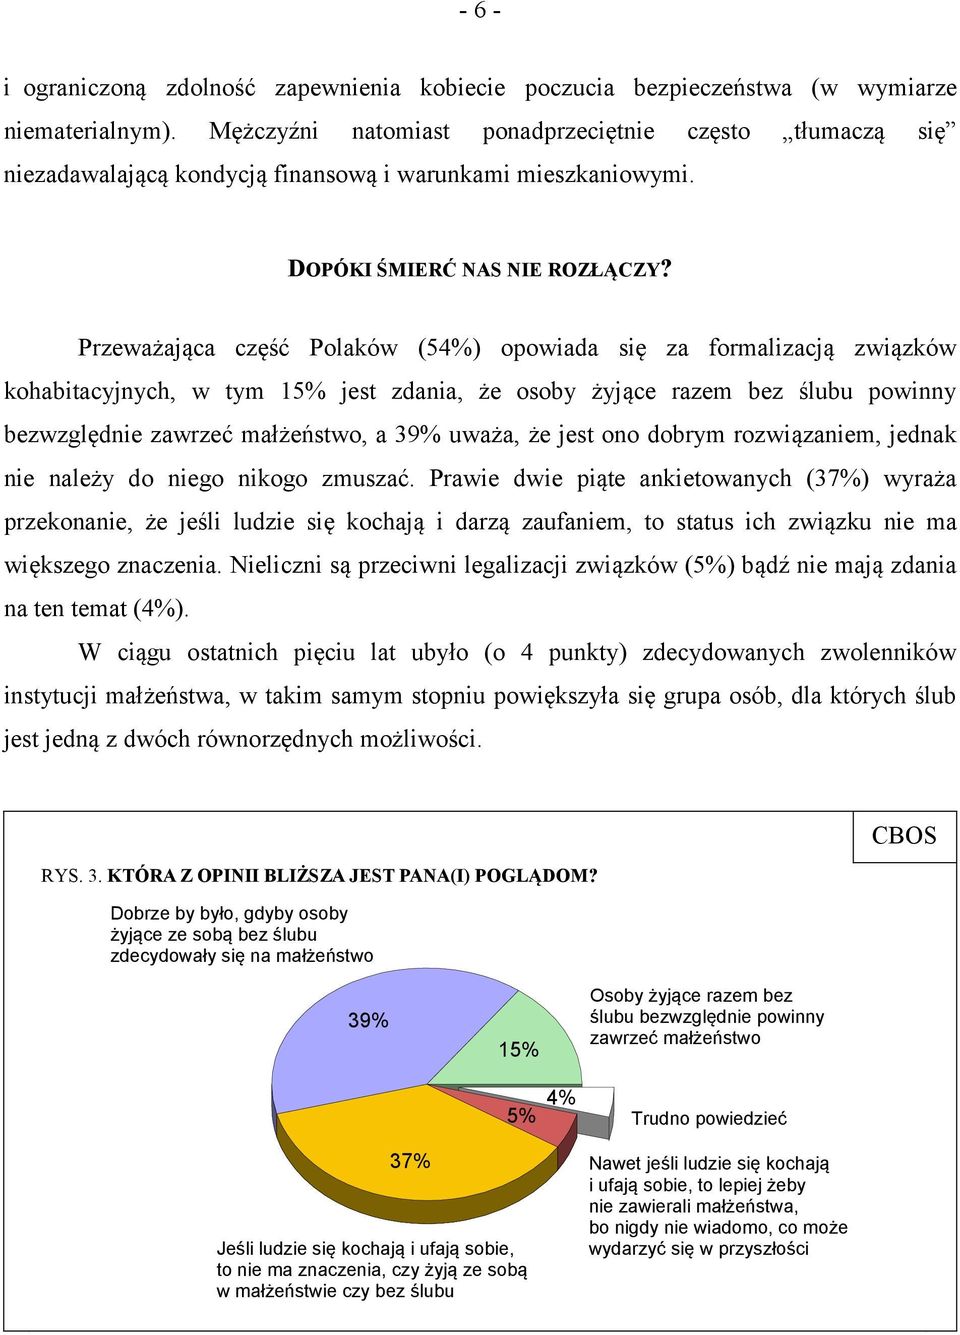 Przeważająca część Polaków (54%) opowiada się za formalizacją związków kohabitacyjnych, w tym 15% jest zdania, że osoby żyjące razem bez ślubu powinny bezwzględnie zawrzeć małżeństwo, a 39% uważa, że